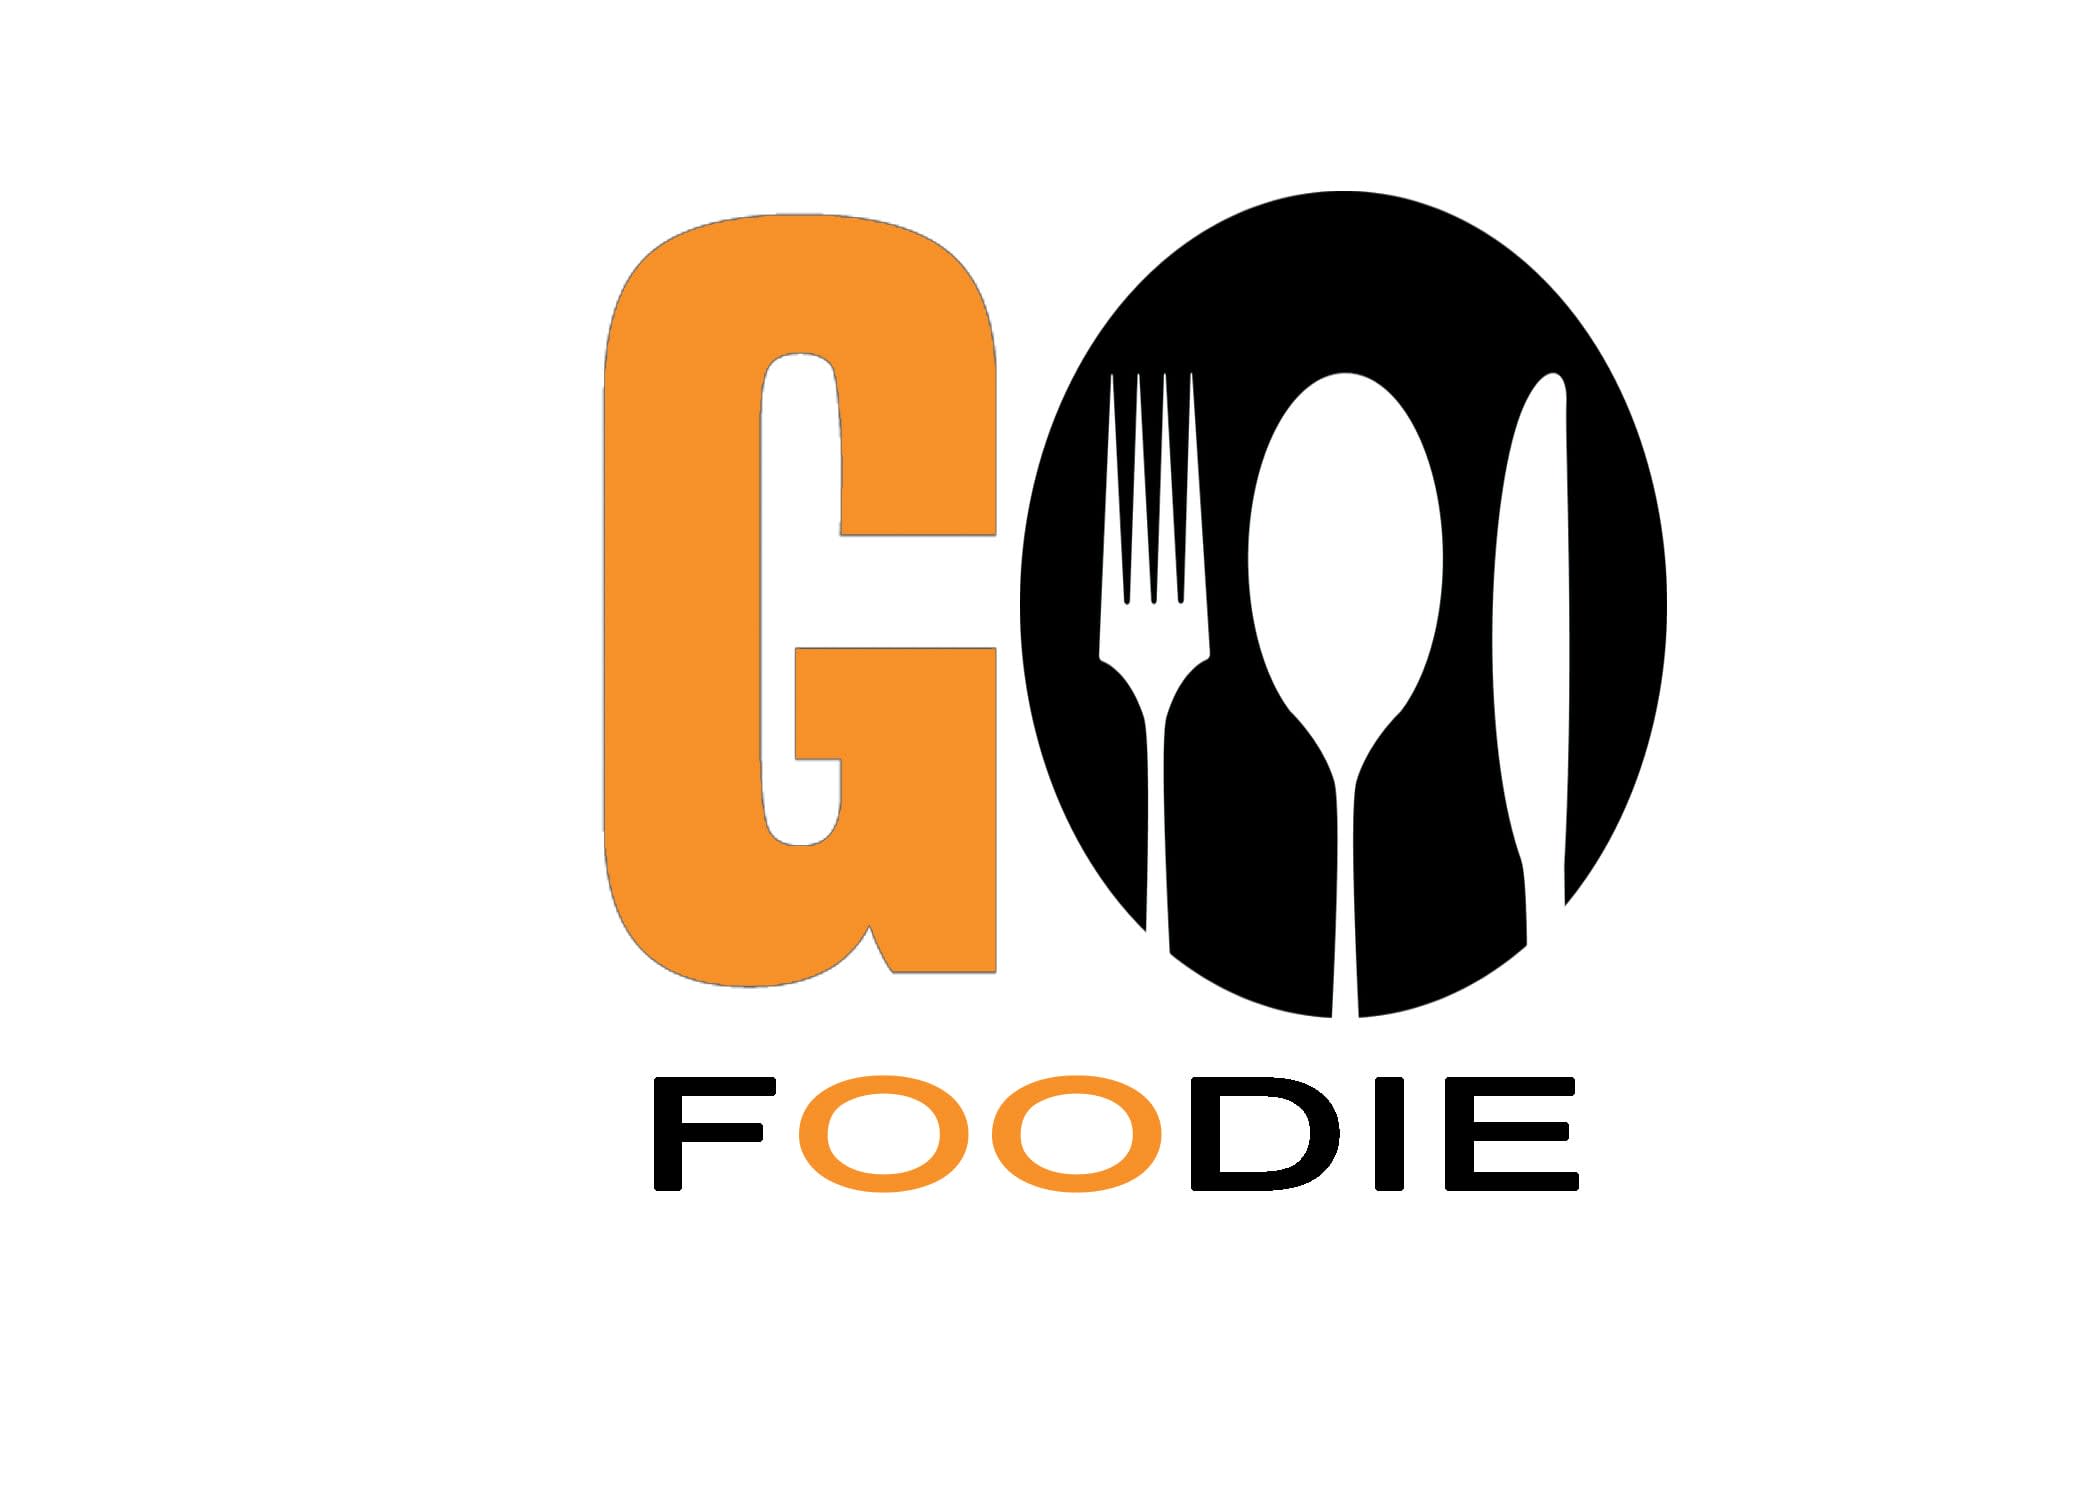 Go Foodie